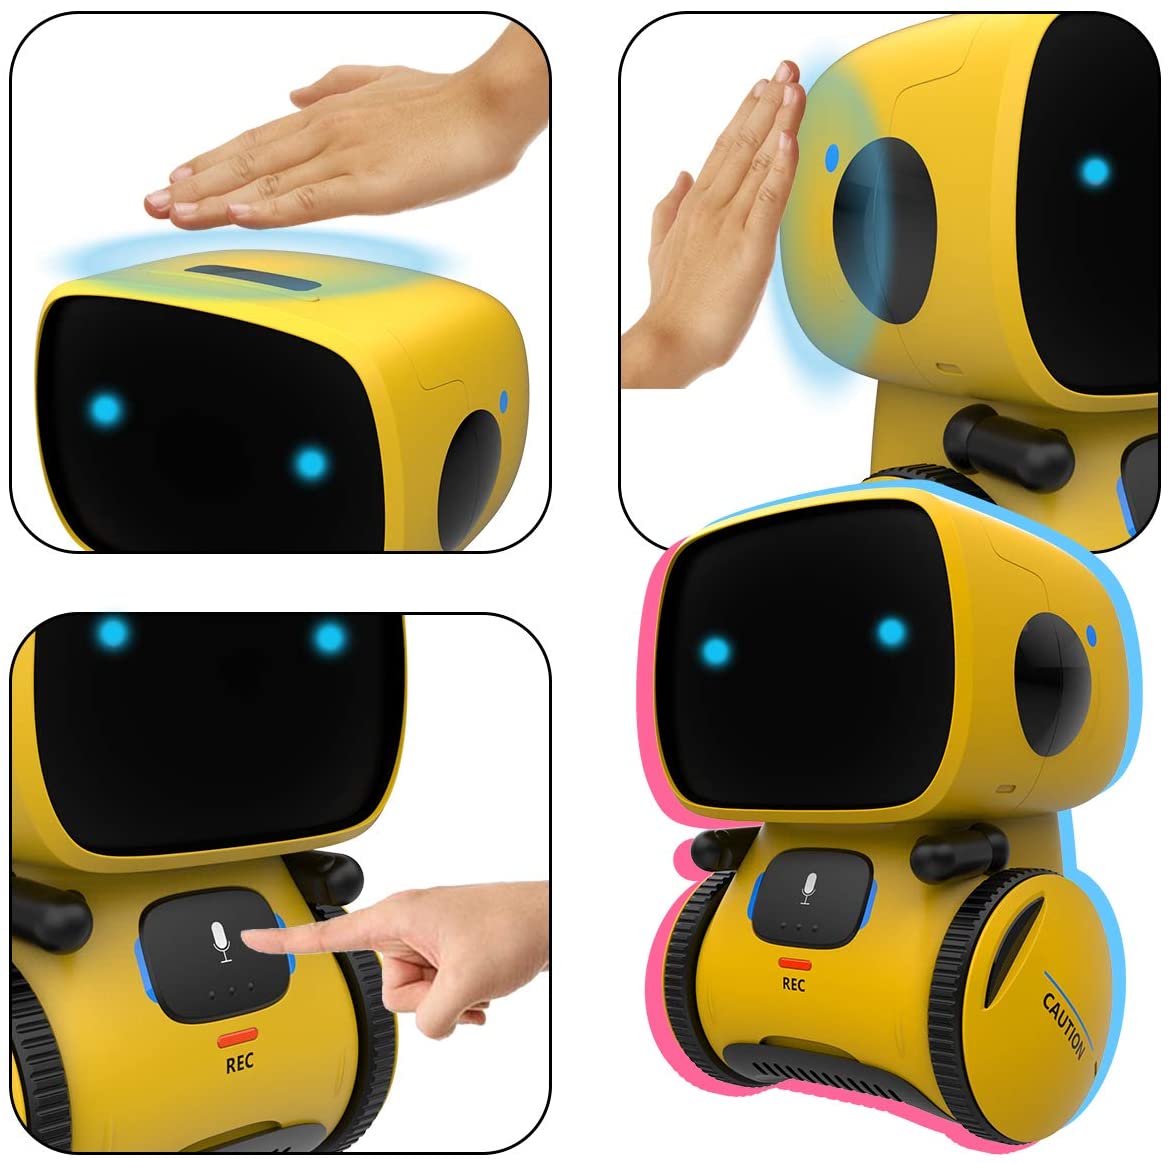 Jungen Mädchen Spielzeug für 3 Jahre alt bis Gilobaby Smart Roboter Spielzeug für Kinder 